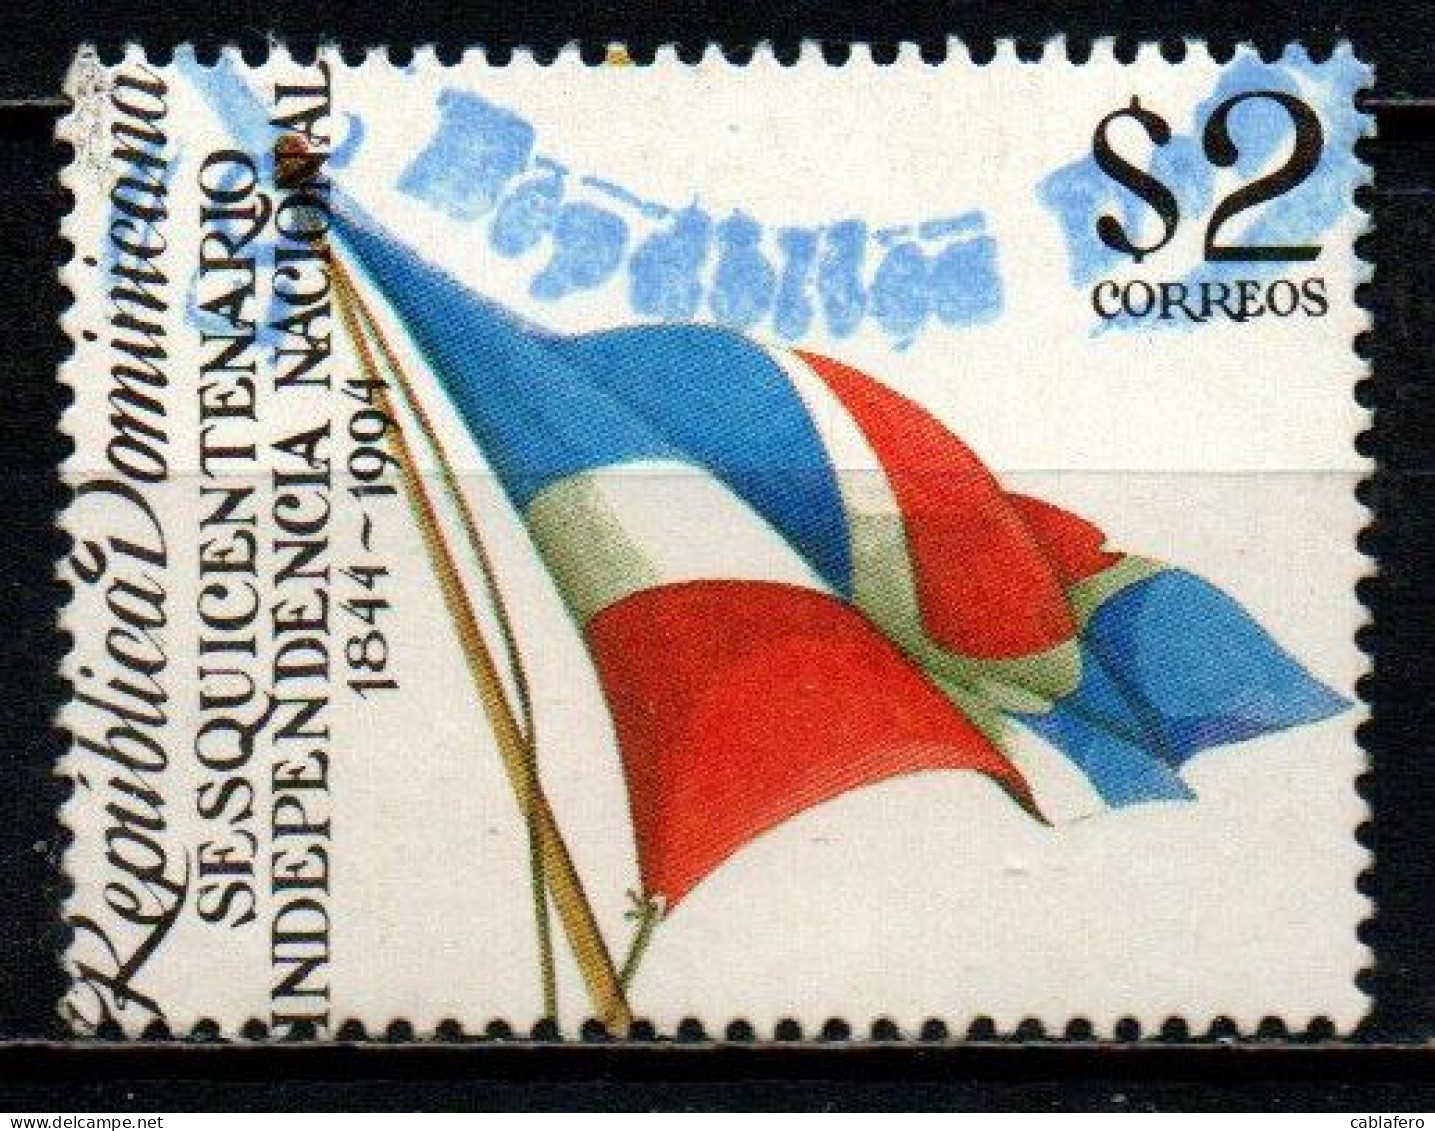 REPUBBLICA DOMENICANA - 1994 - 150° ANNIVERSARIO DELL'INDIPENDENZA - BANDIERA NAZIONALE - USATO - Dominican Republic